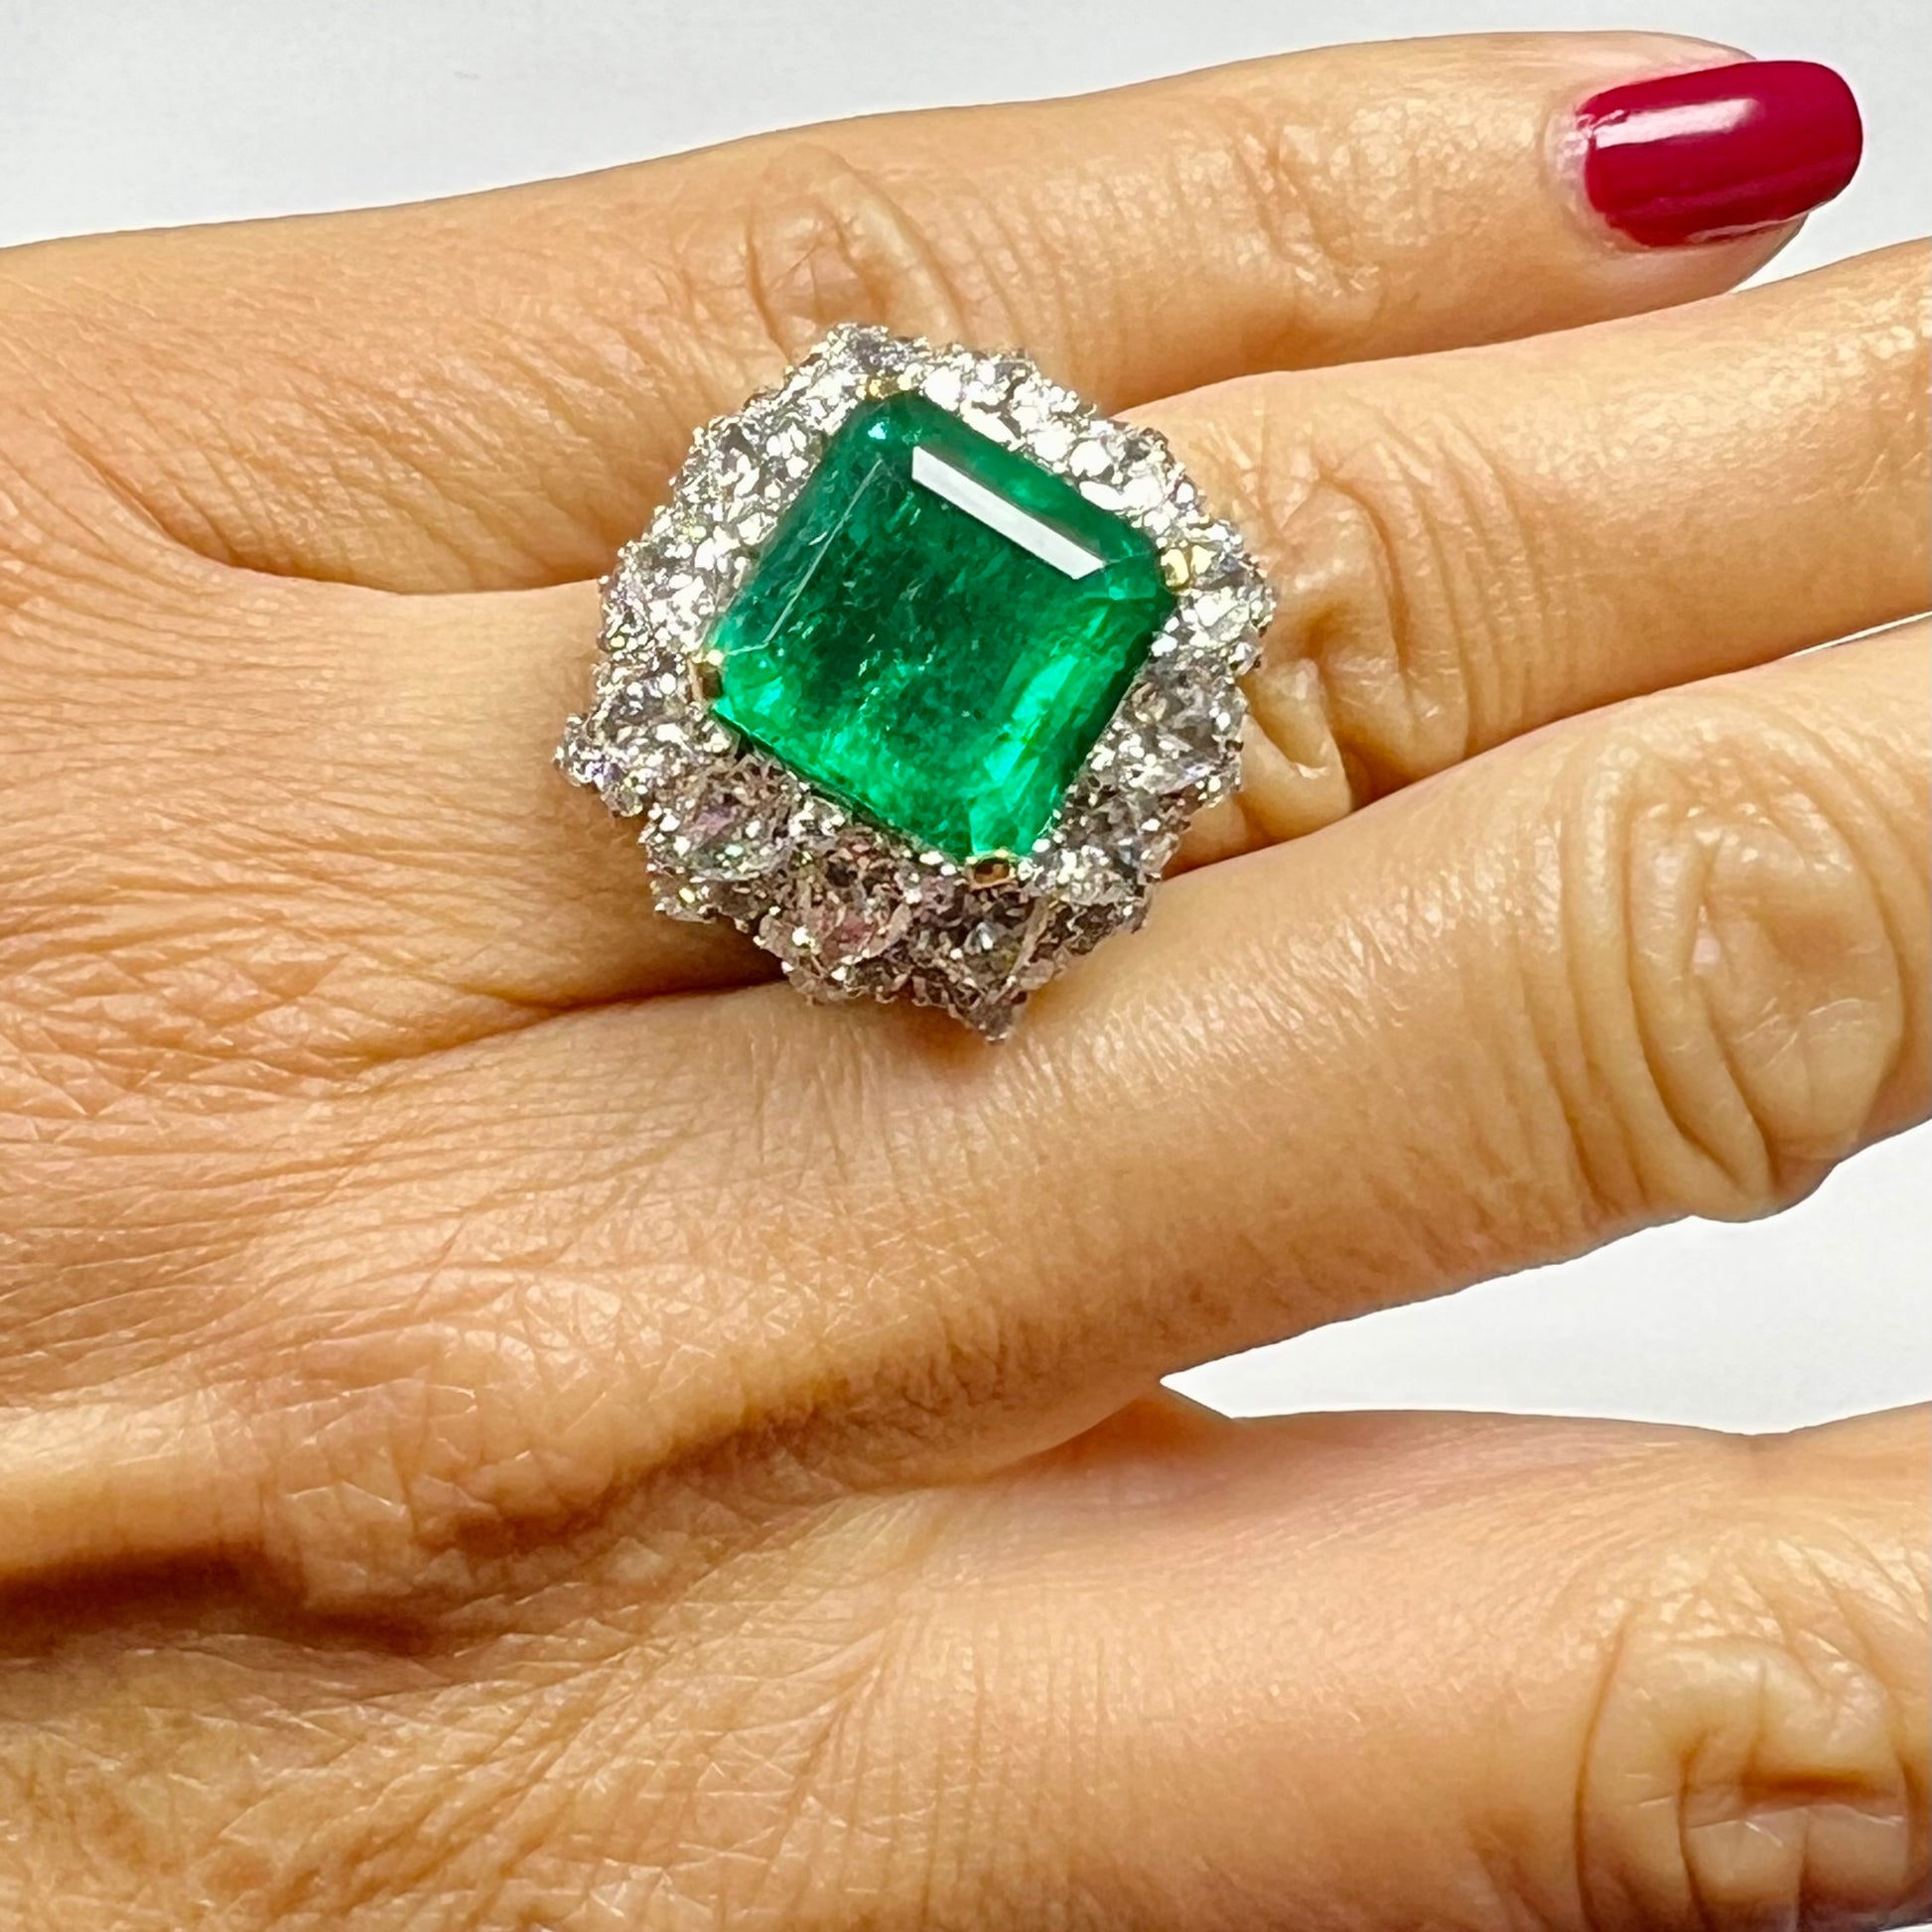 Bulgari 1960s Platinum Emerald & Diamond Ring worn on hand